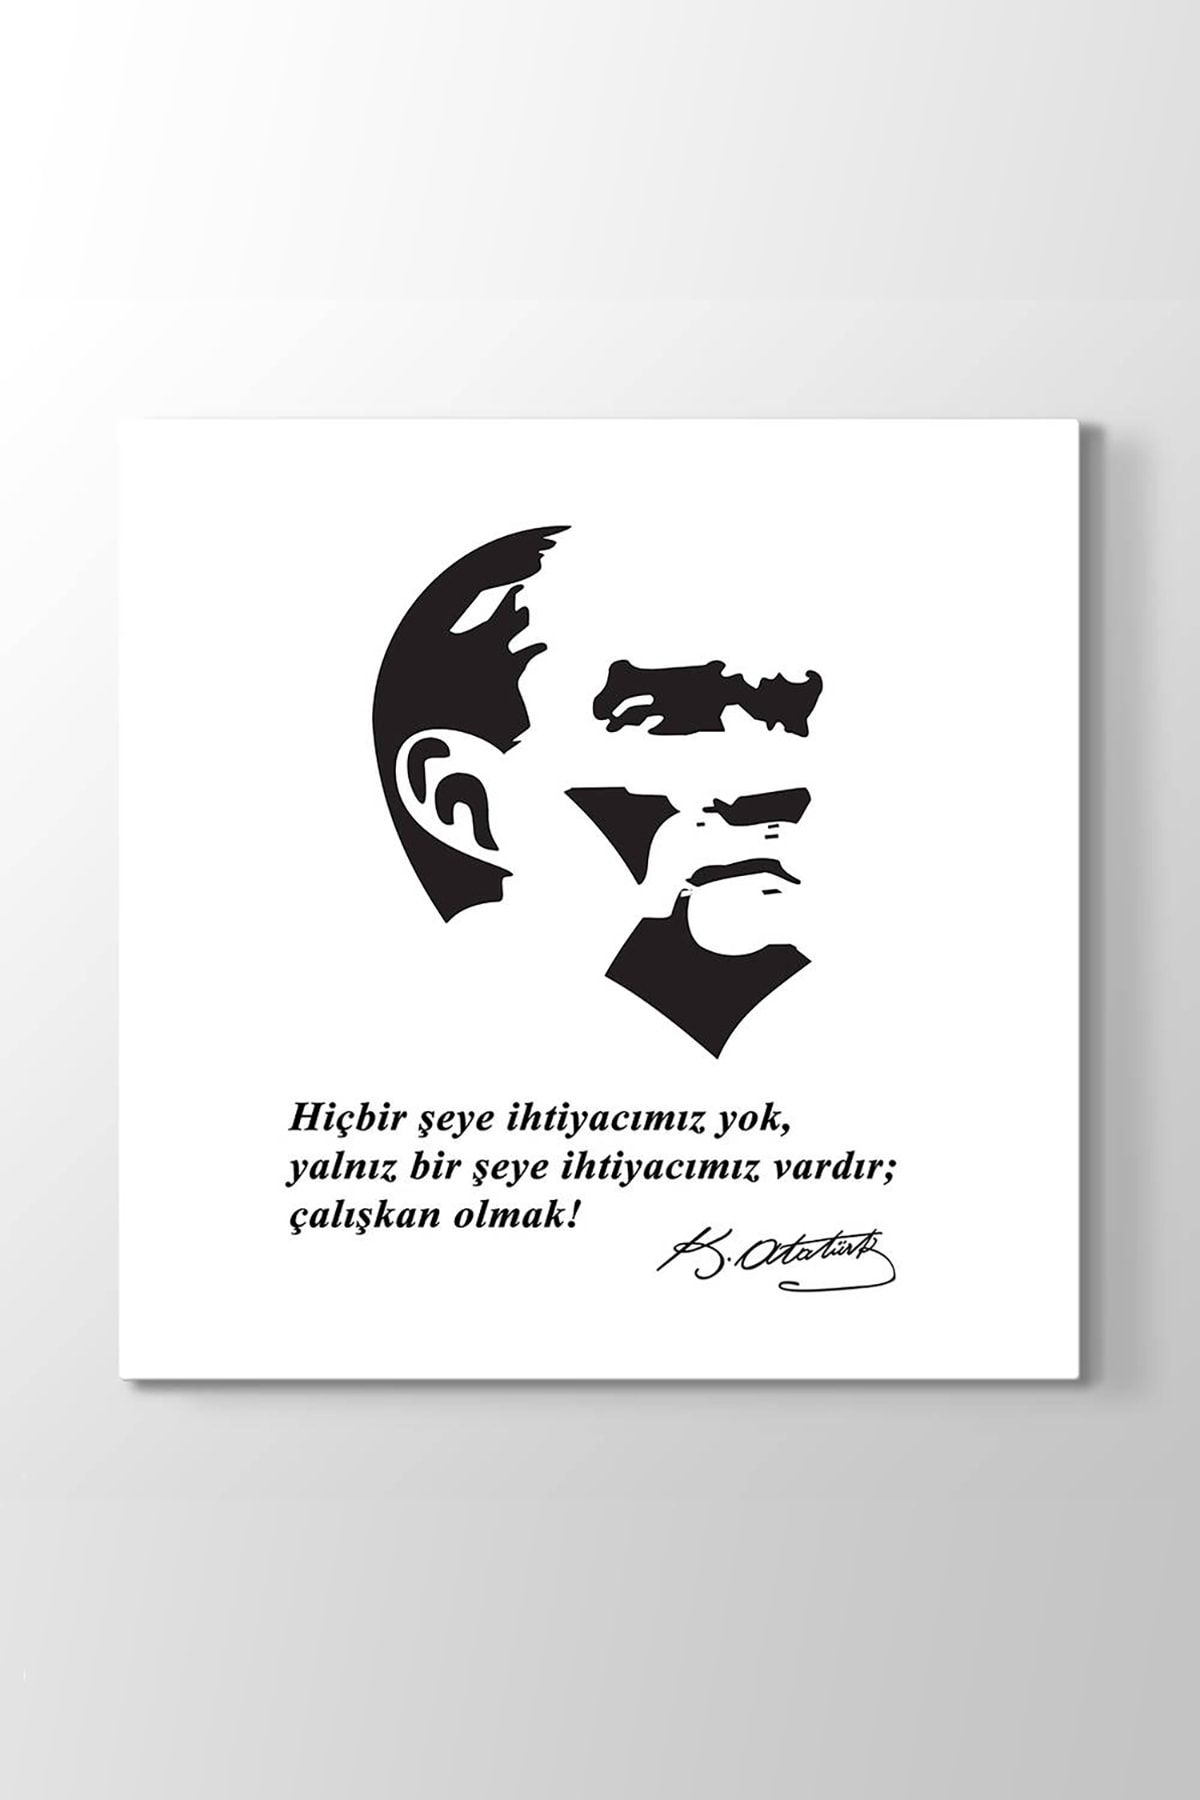 TabloShop Atatürk Sözleri Tablosu (Model 3) - (ÖLÇÜSÜ 70x70 cm)